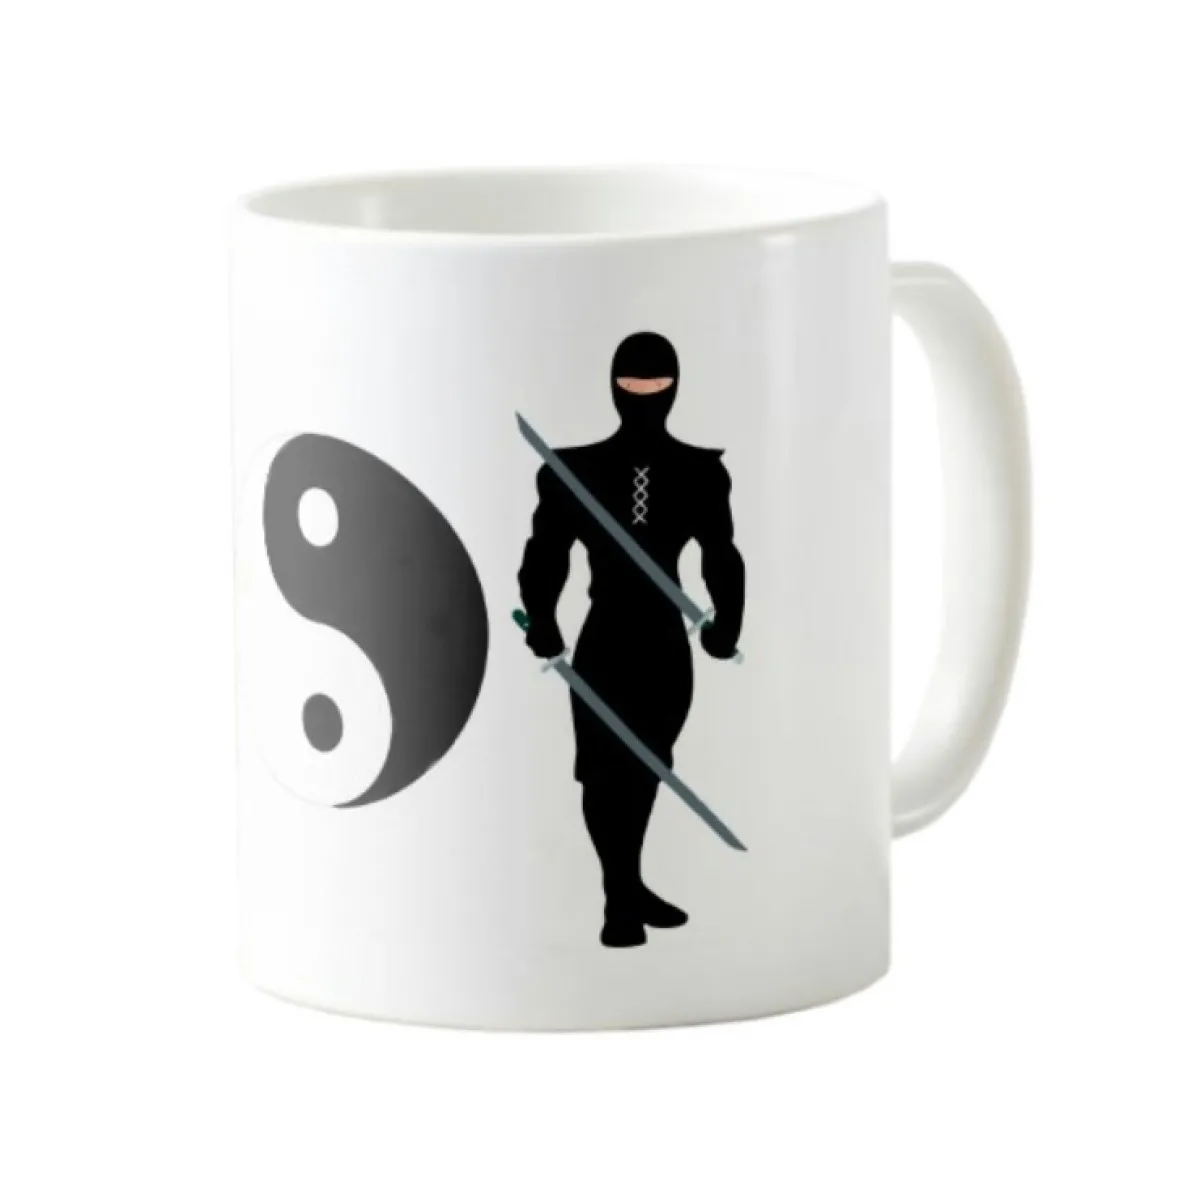 Mug - Coffee mug - Ninja mug